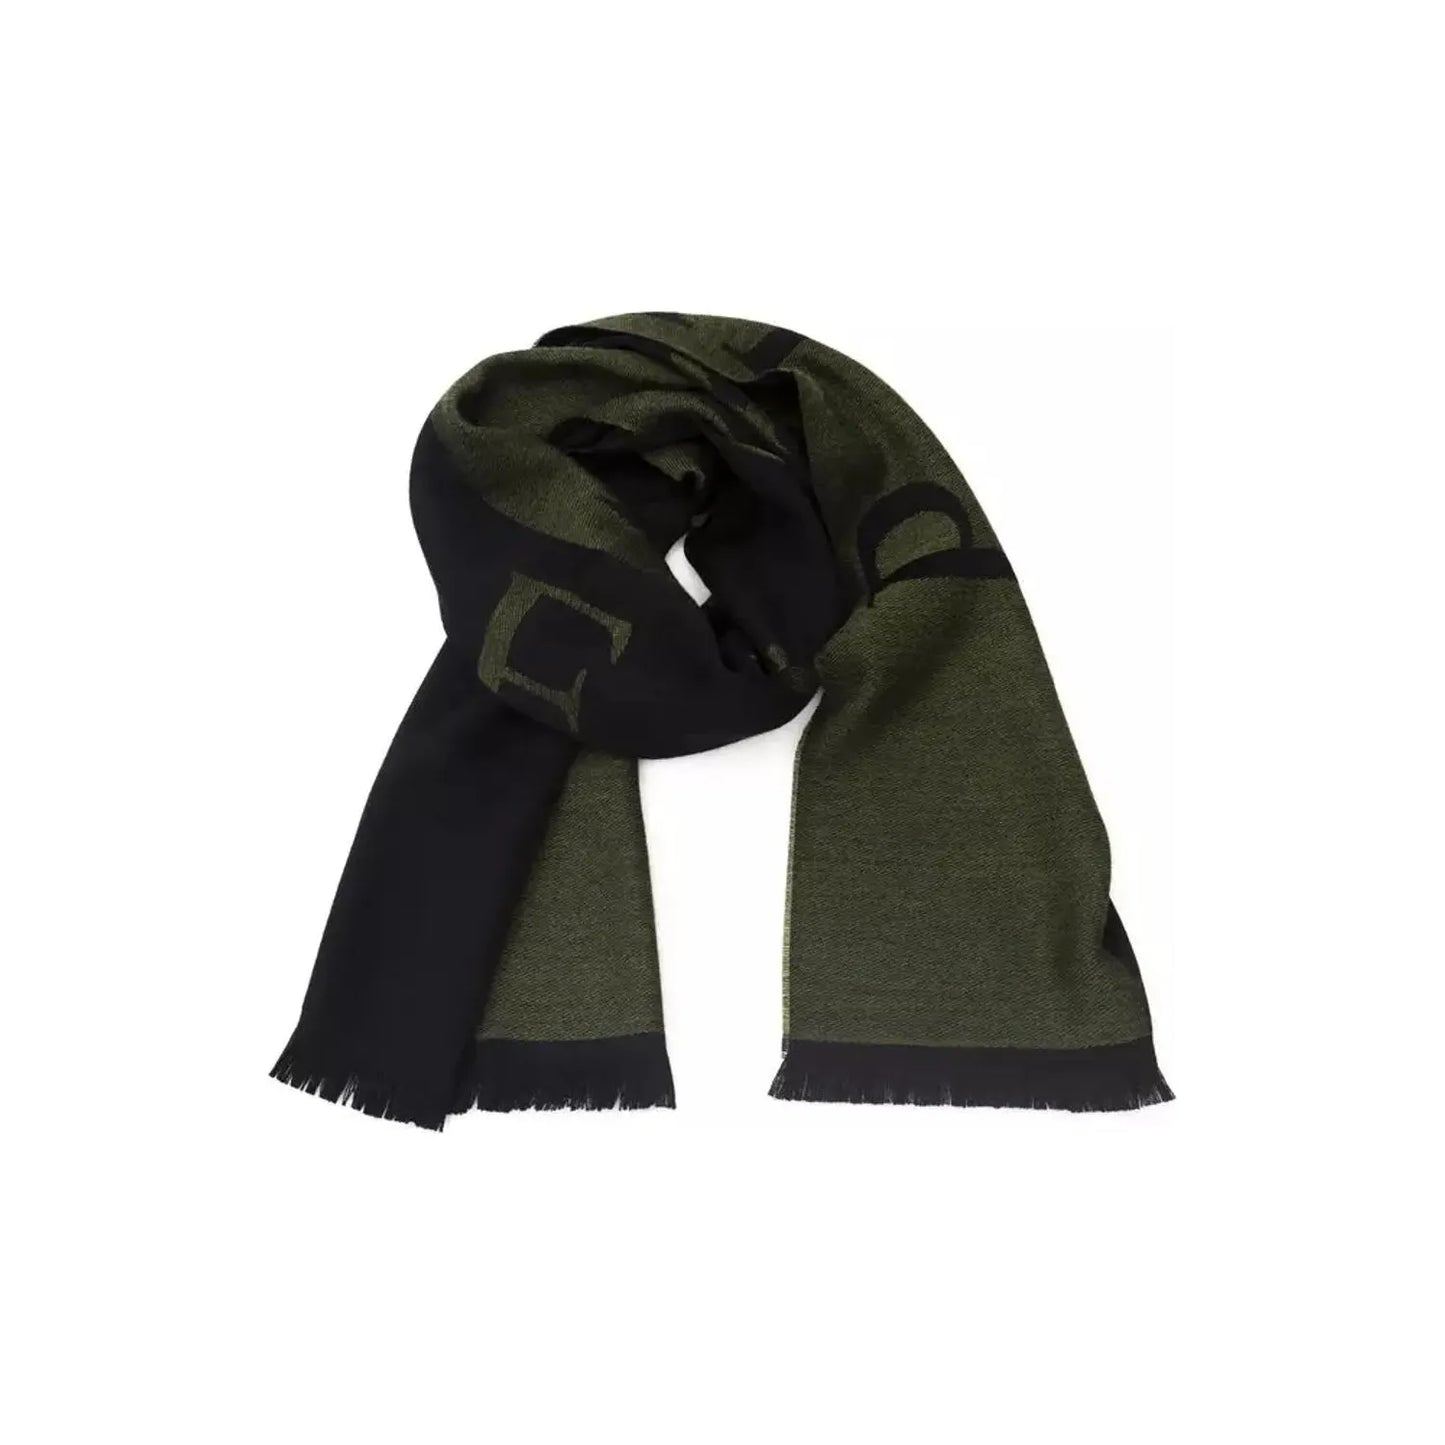 Philipp Plein Elegant Green Fringed Scarf green-wool-scarf Wool Wrap Shawl Scarf product-22235-539056814-24-f6cc9d95-ee2.webp